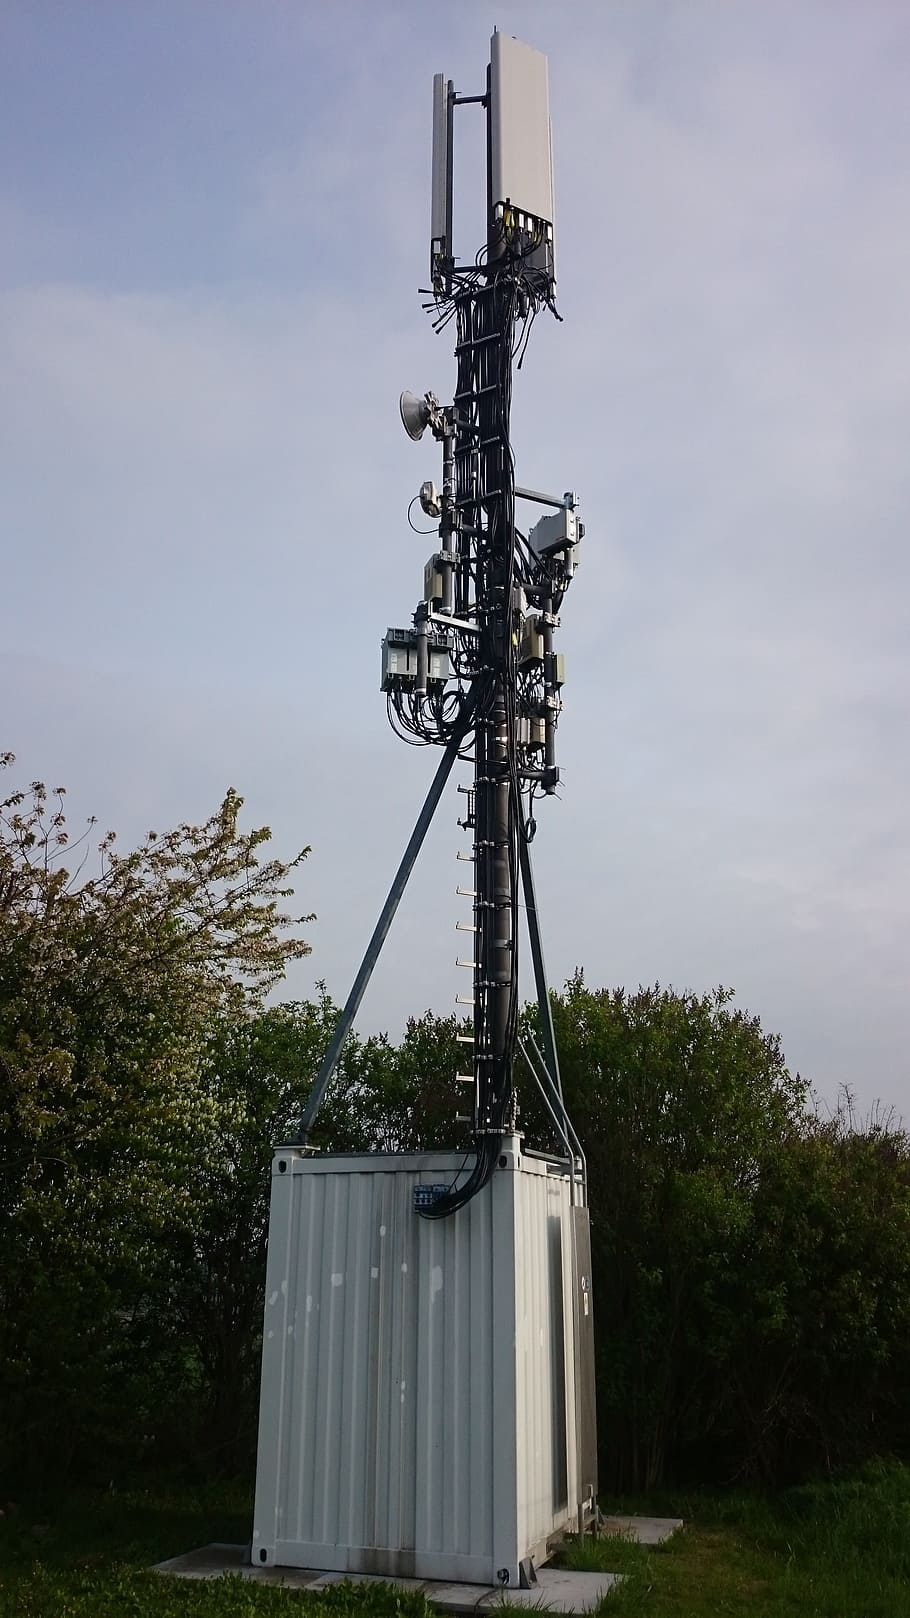 Radio Mast, Radio Station, Mobile, base station, transmission tower